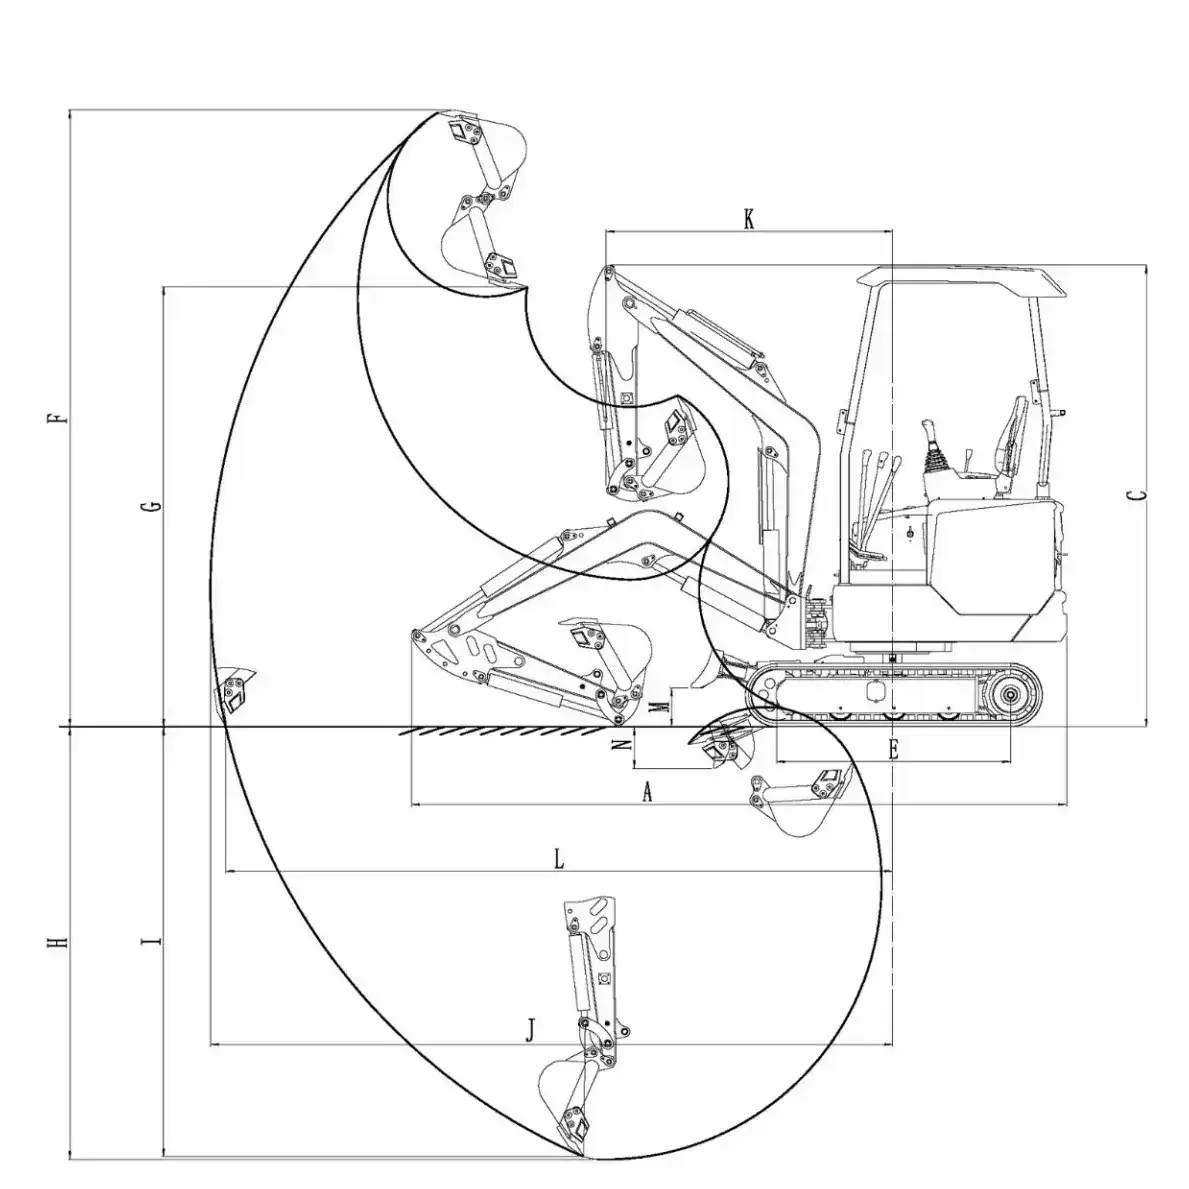 Schema tecnico del miniescavatore CL18S